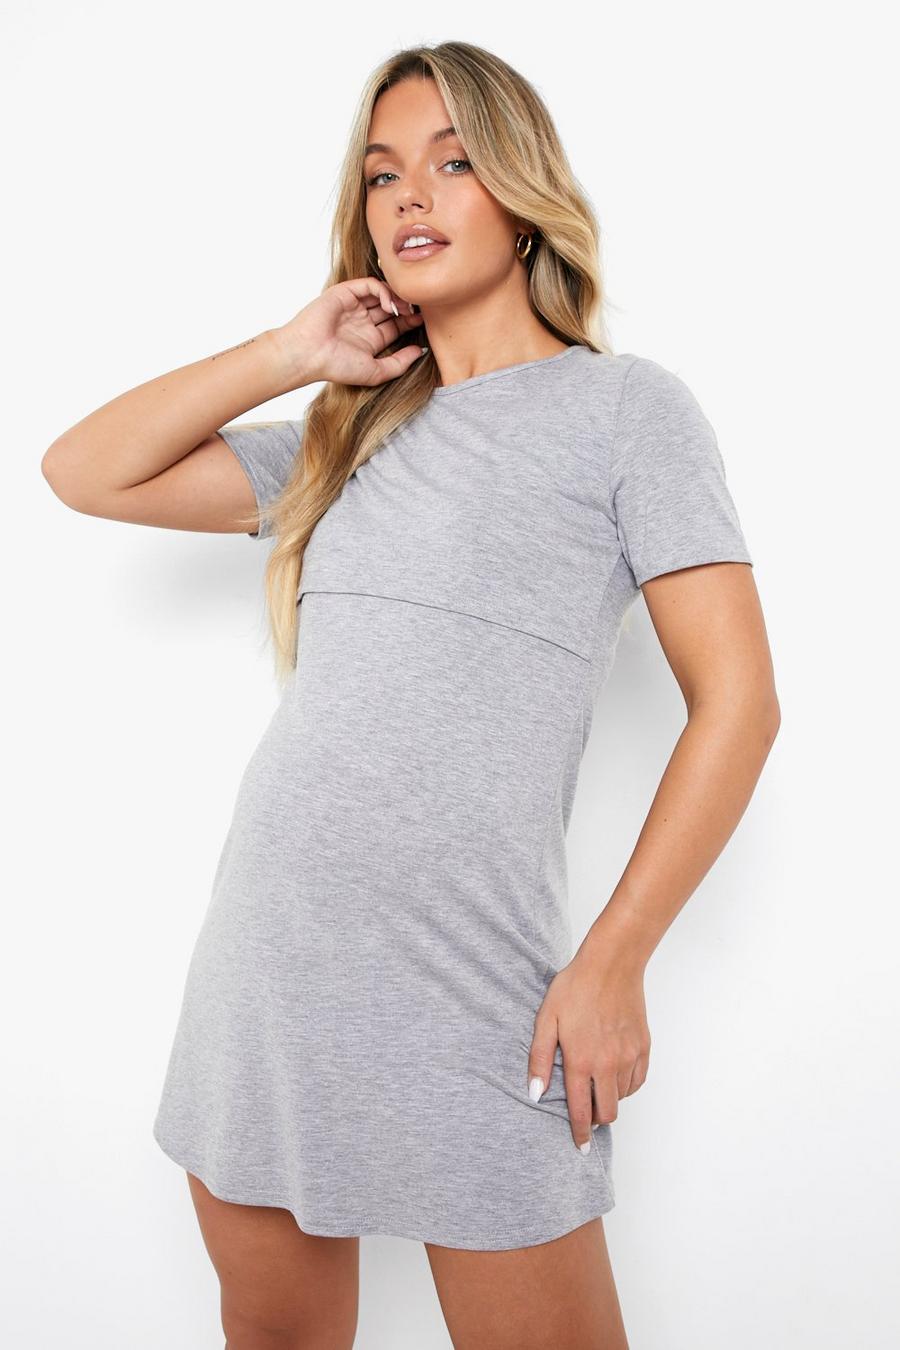 Grey marl Maternity Nursing T-Shirt Nightgown